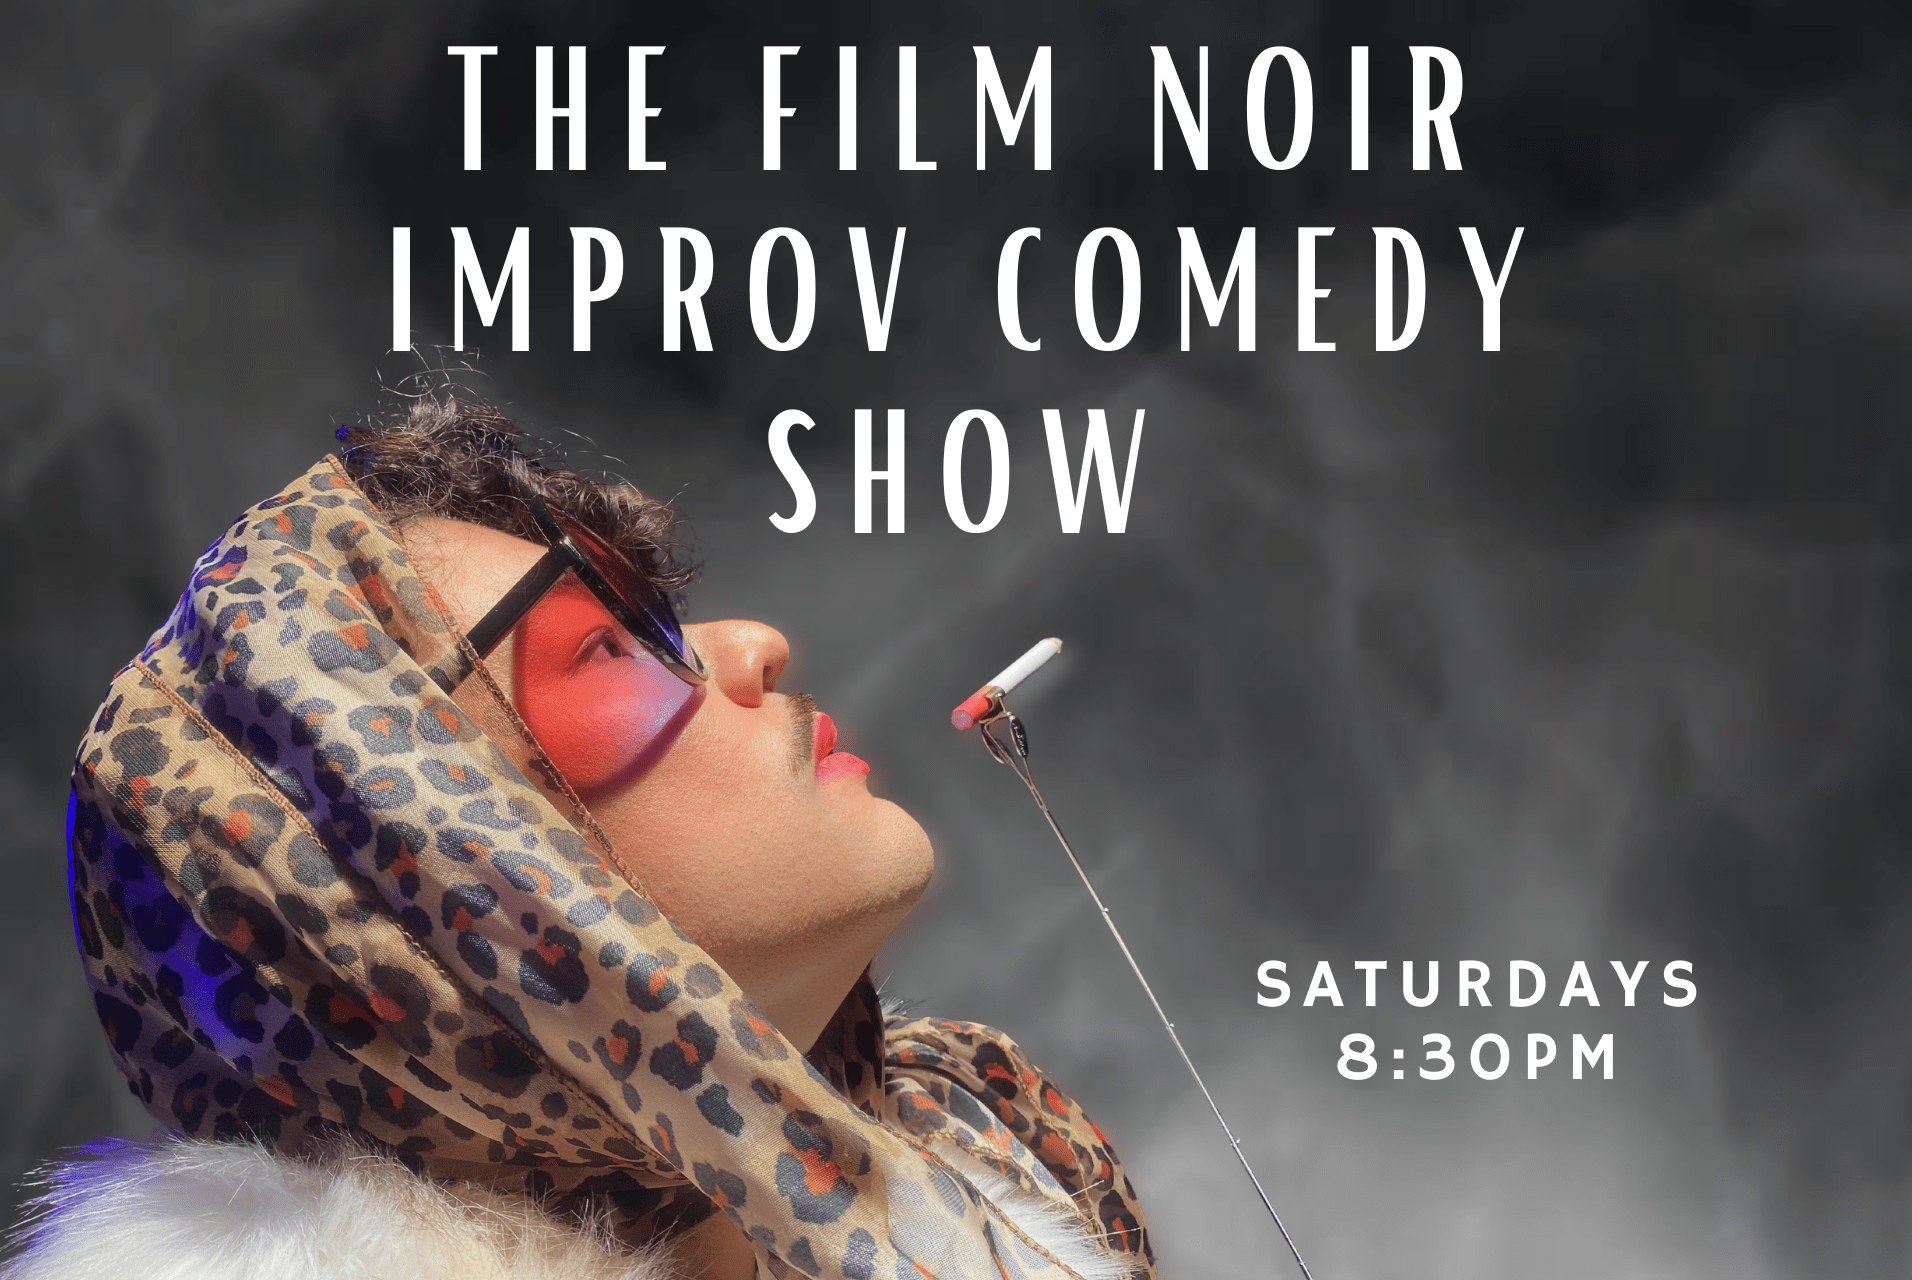 The Film Noir Improv Comedy Show